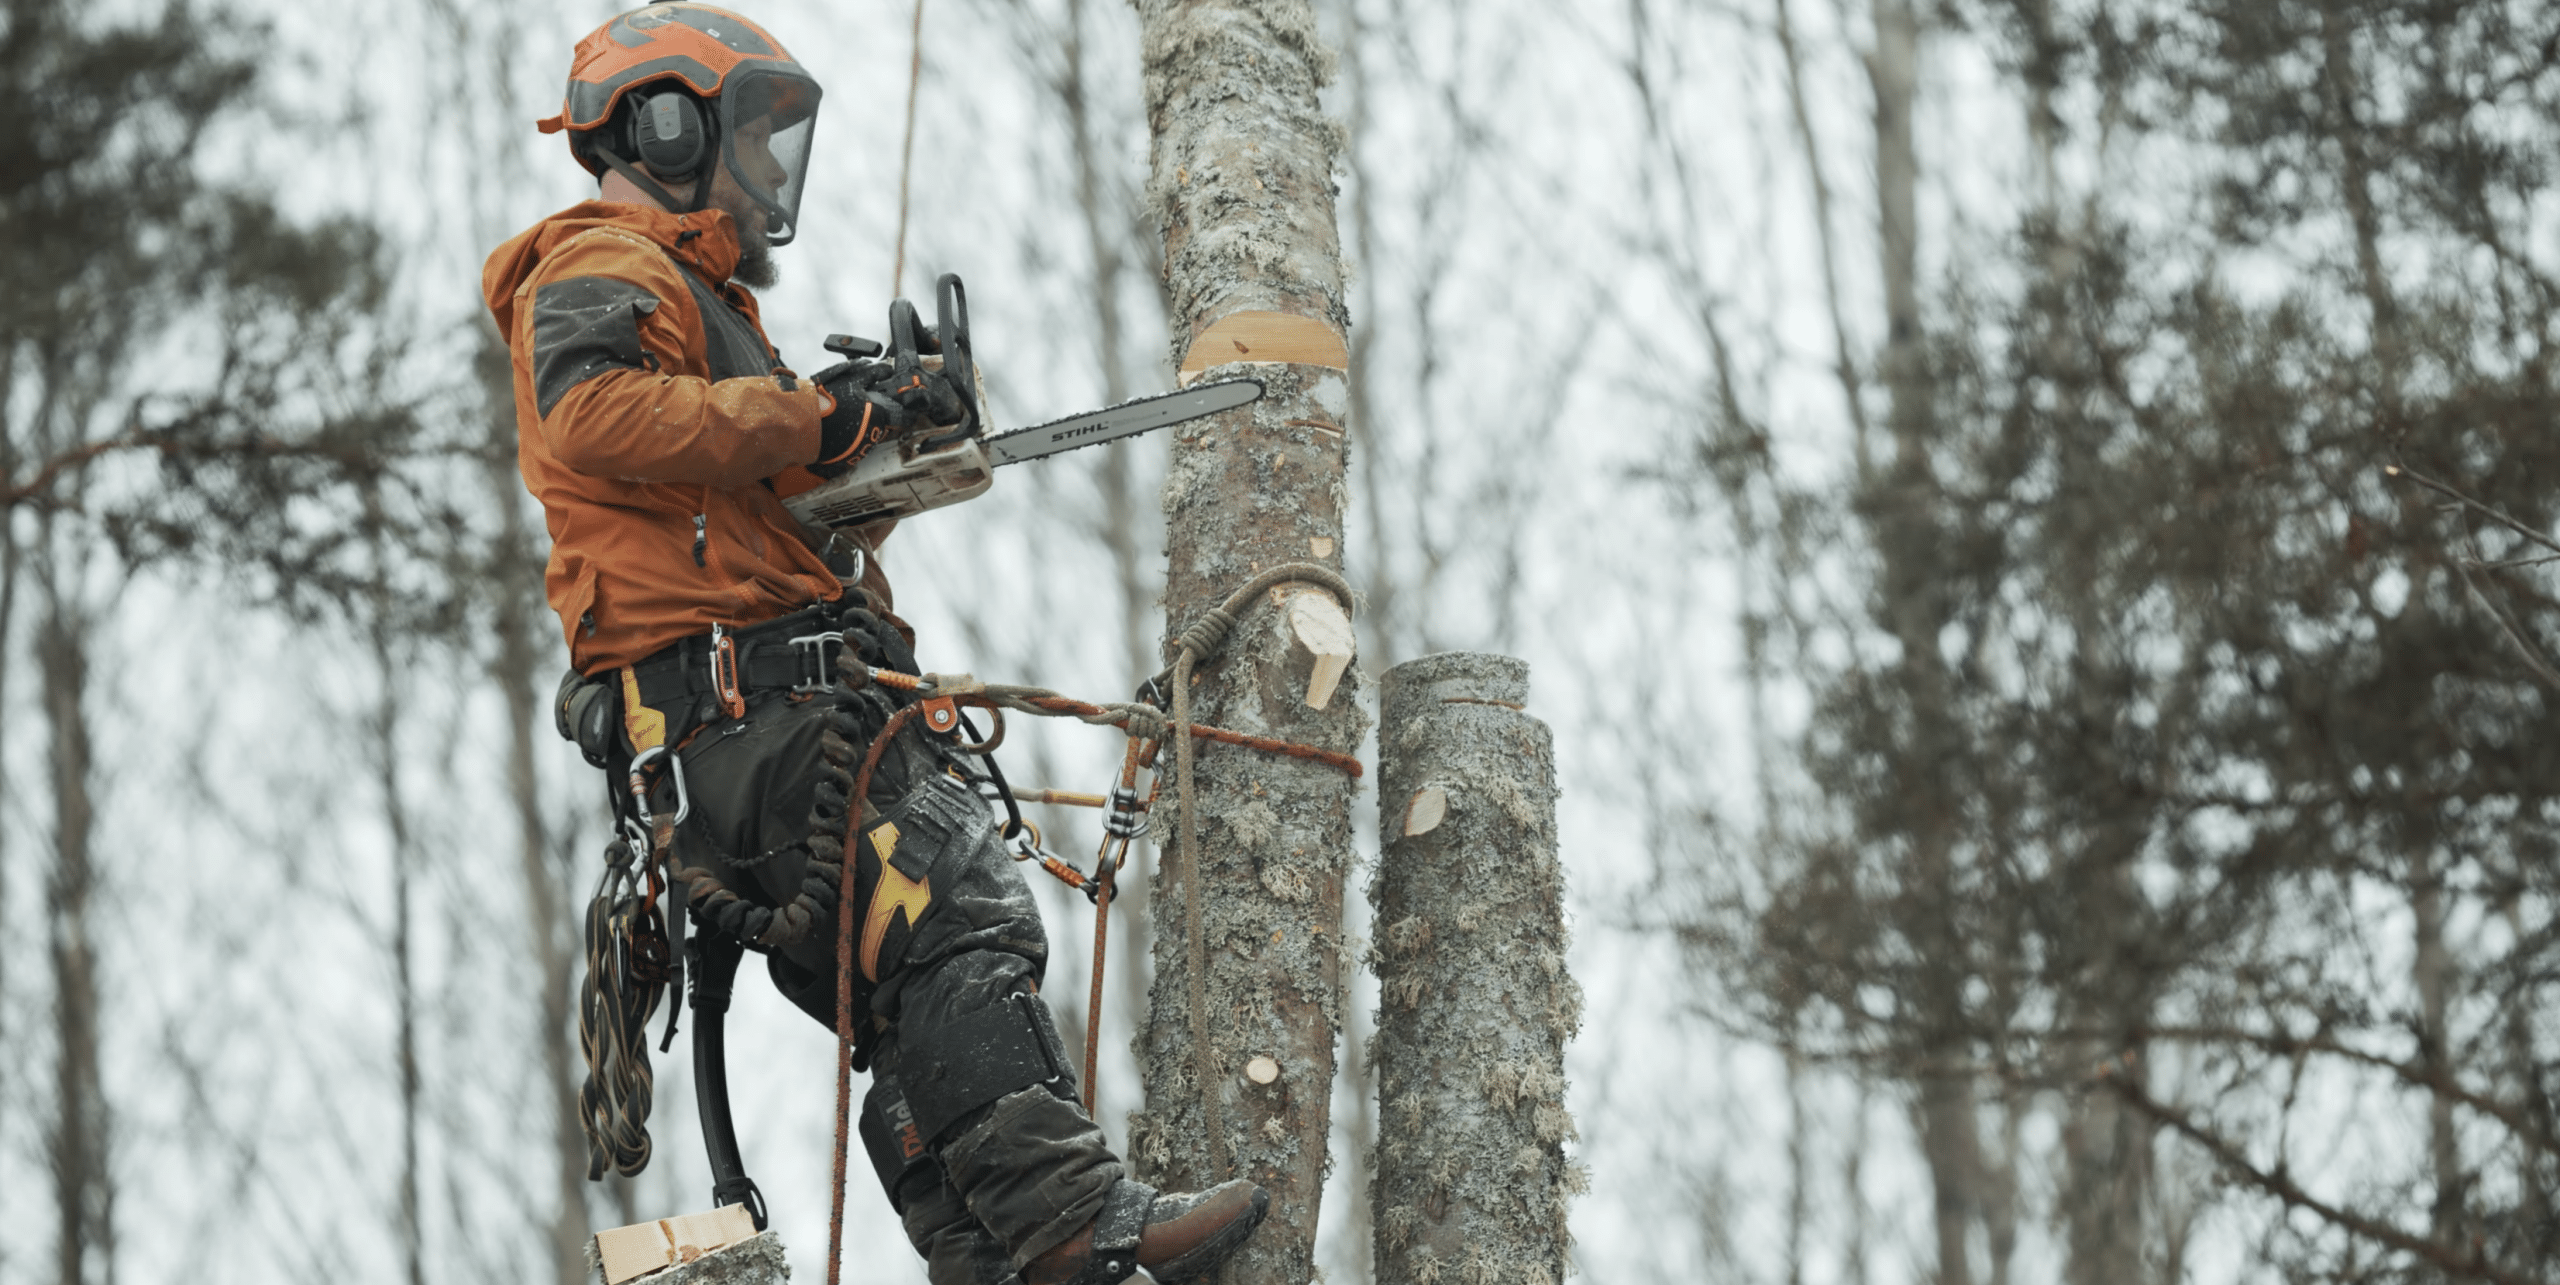 En erfaren arborist klättrar upp i ett imponerande träd i Uppsala för att utföra expertträdvård.